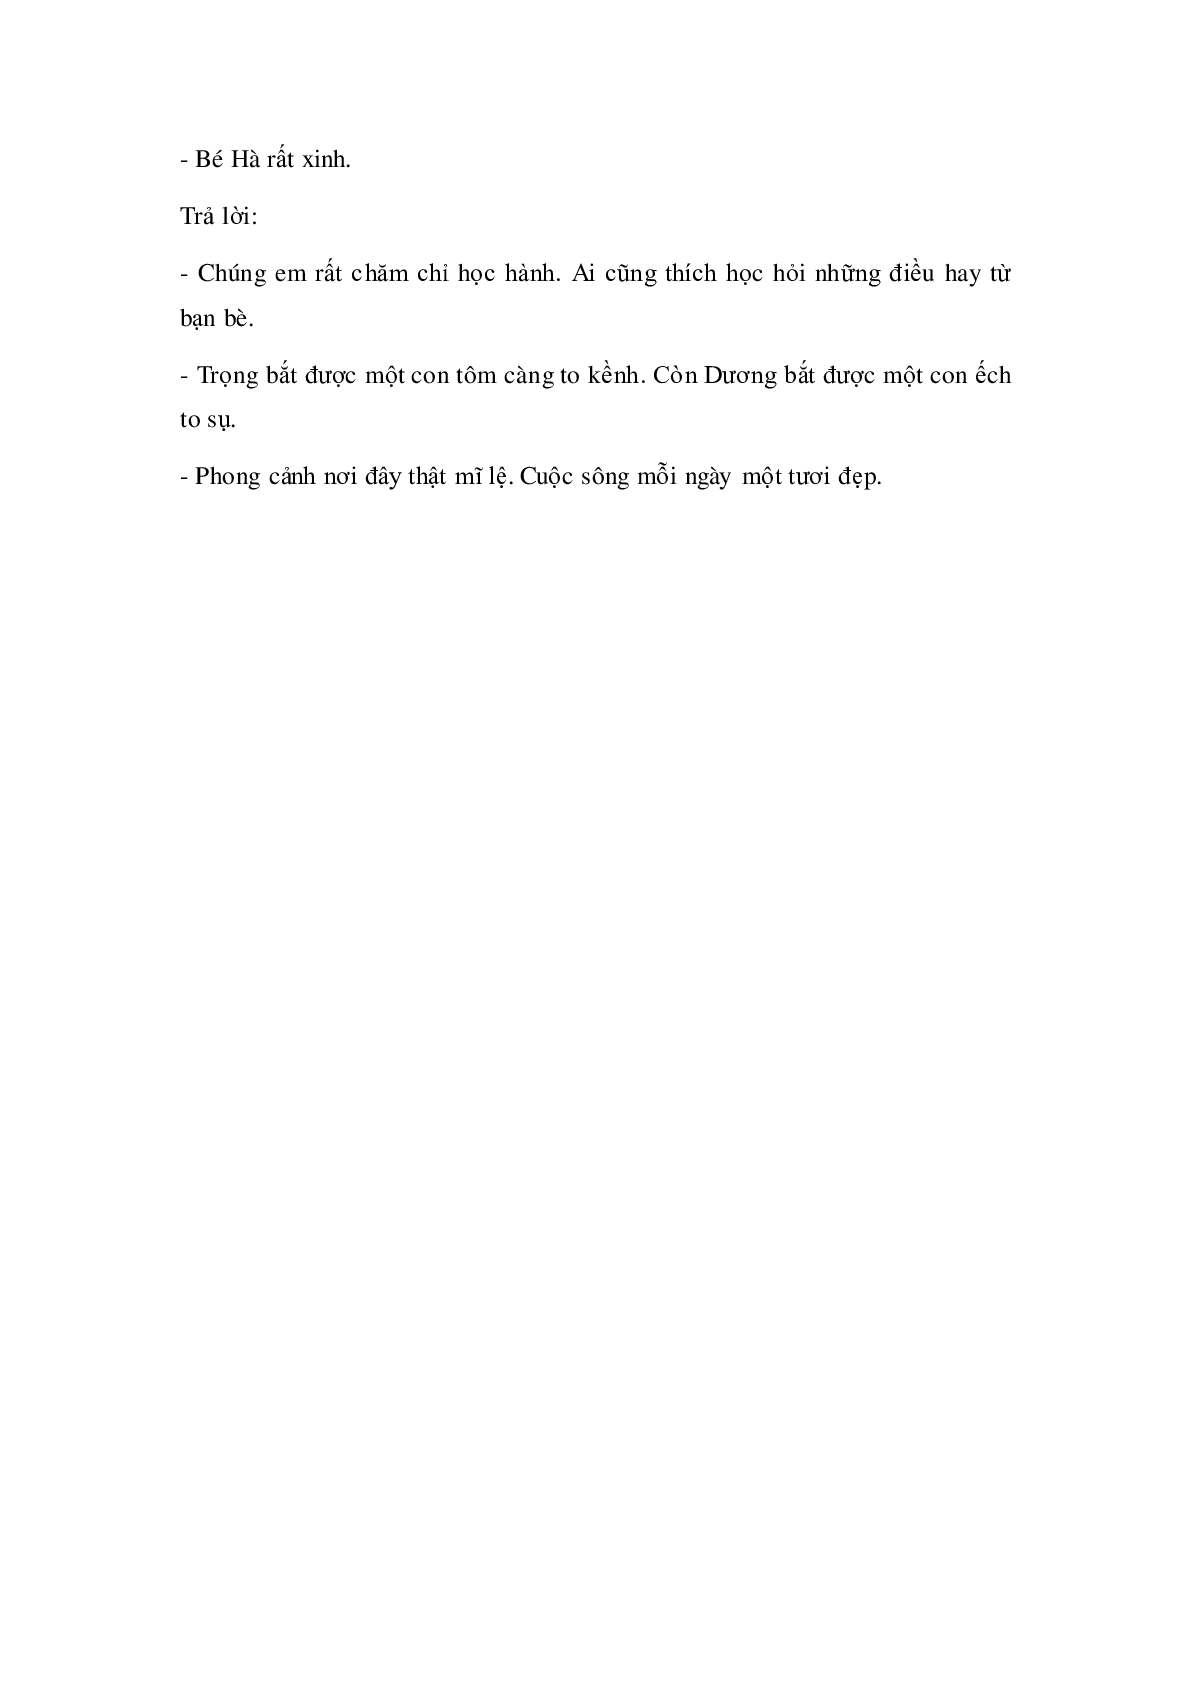 Soạn Tiếng Việt lớp 5: Luyện từ và câu- Từ đồng nghĩa mới nhất (trang 4)